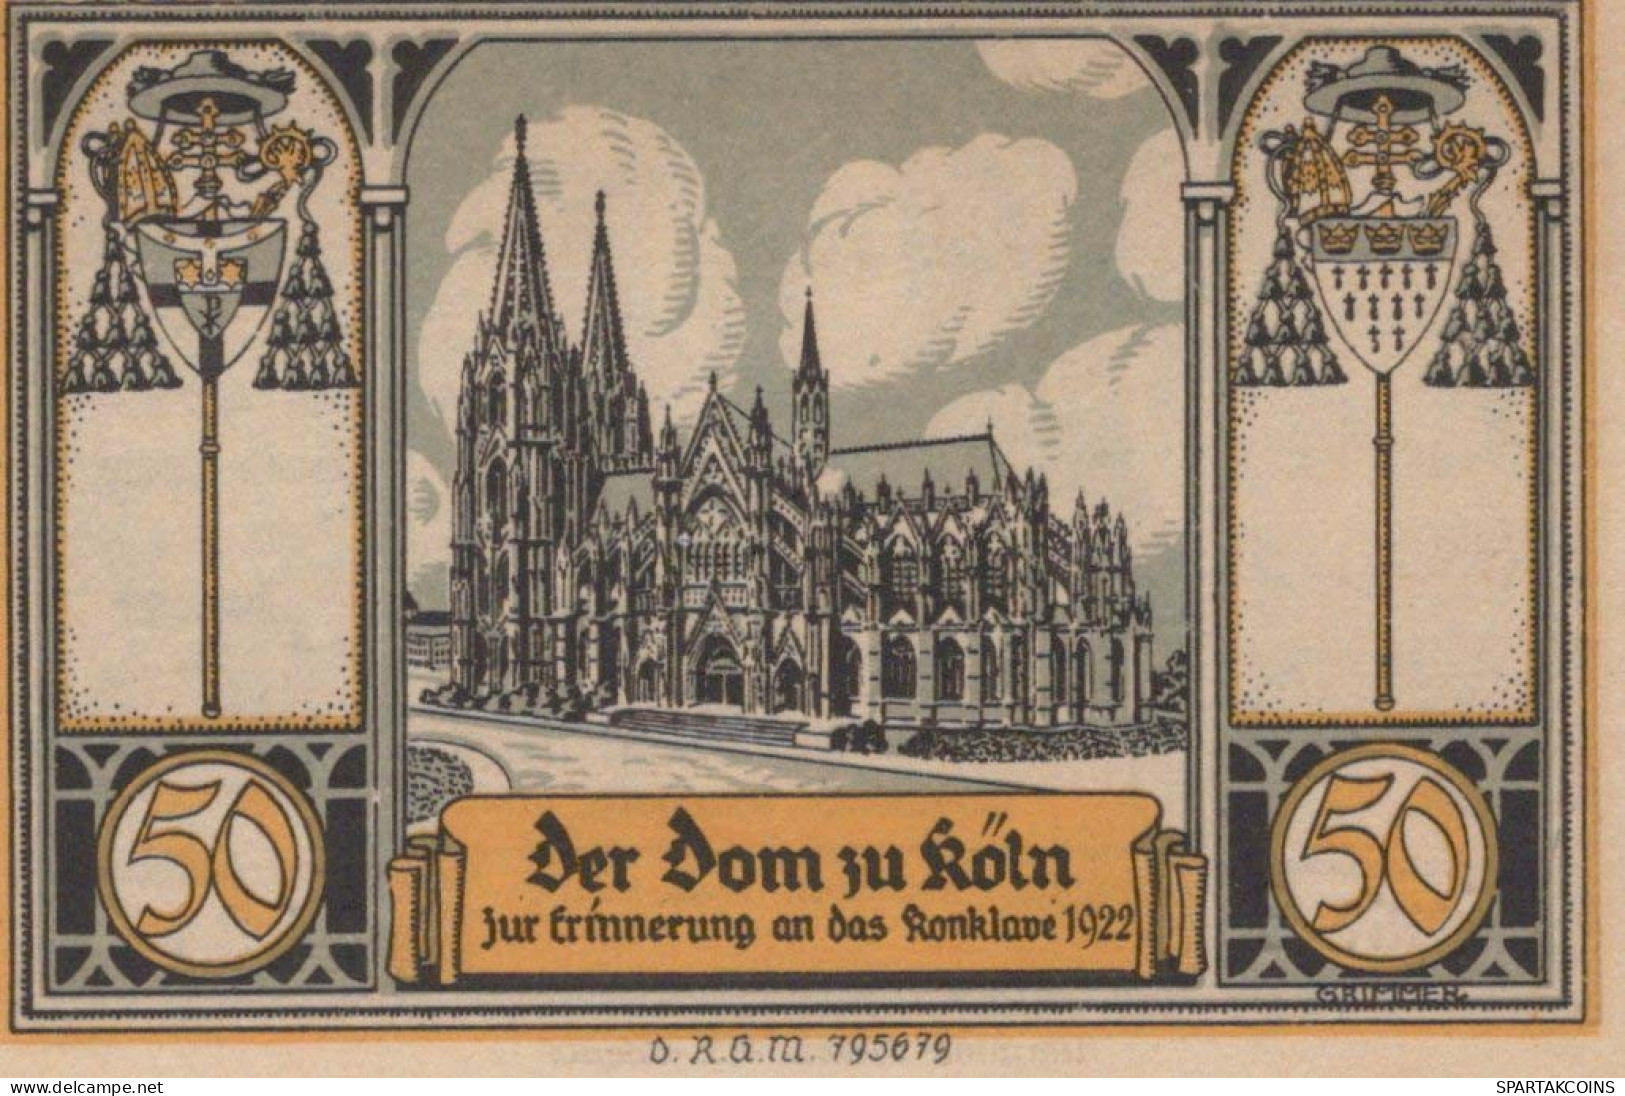 50 PFENNIG 1922 Stadt GLOGAU Niedrigeren Silesia UNC DEUTSCHLAND Notgeld #PC974 - [11] Local Banknote Issues